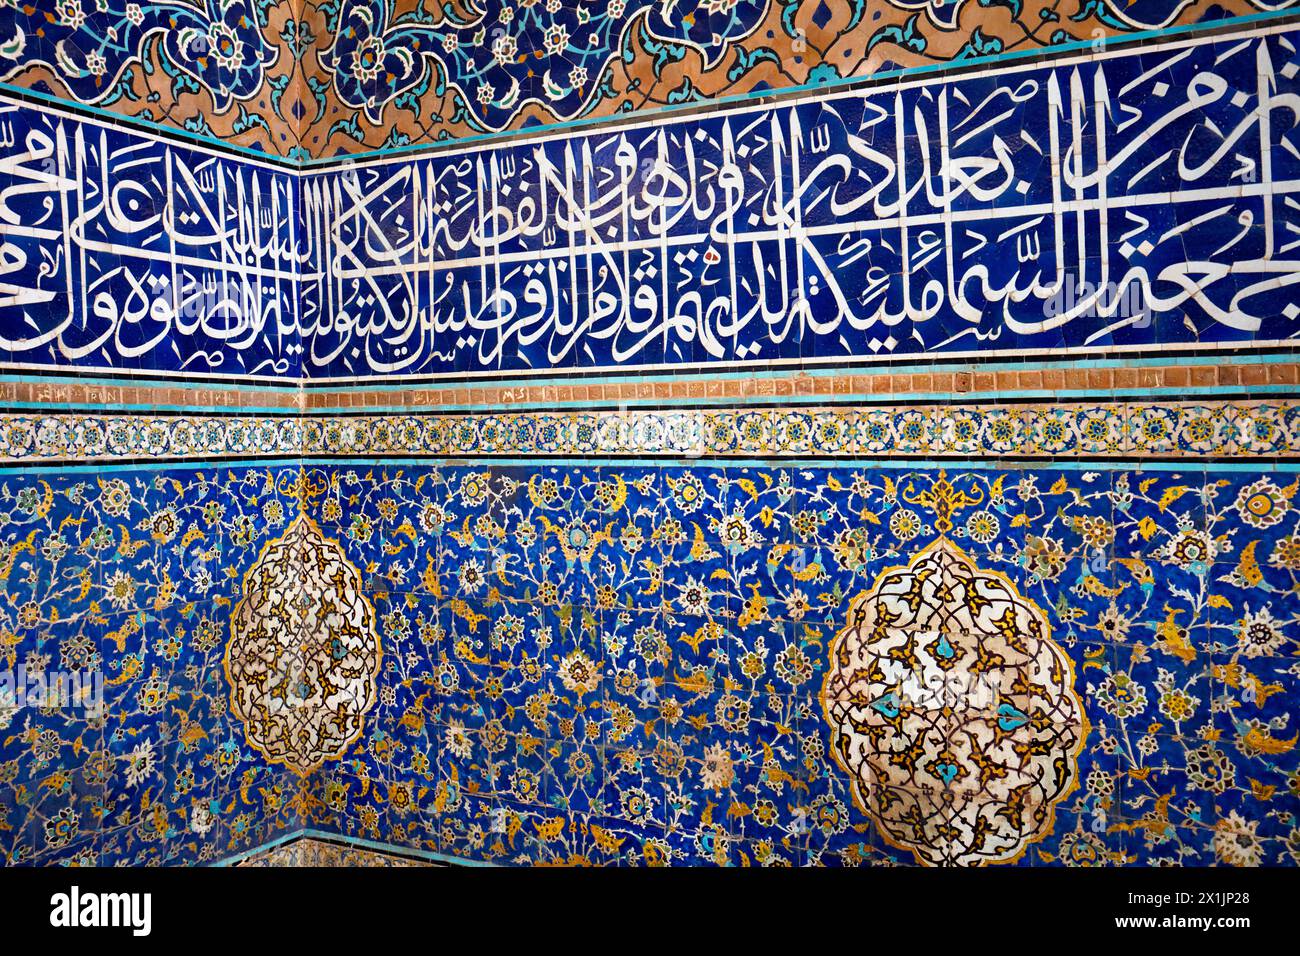 Vista ravvicinata di piastrelle altamente elaborate con motivi arabeschi e calligrafia coranica sulle pareti della Moschea dello Scià (Masjed-e Shah). Isfahan, Iran. Foto Stock